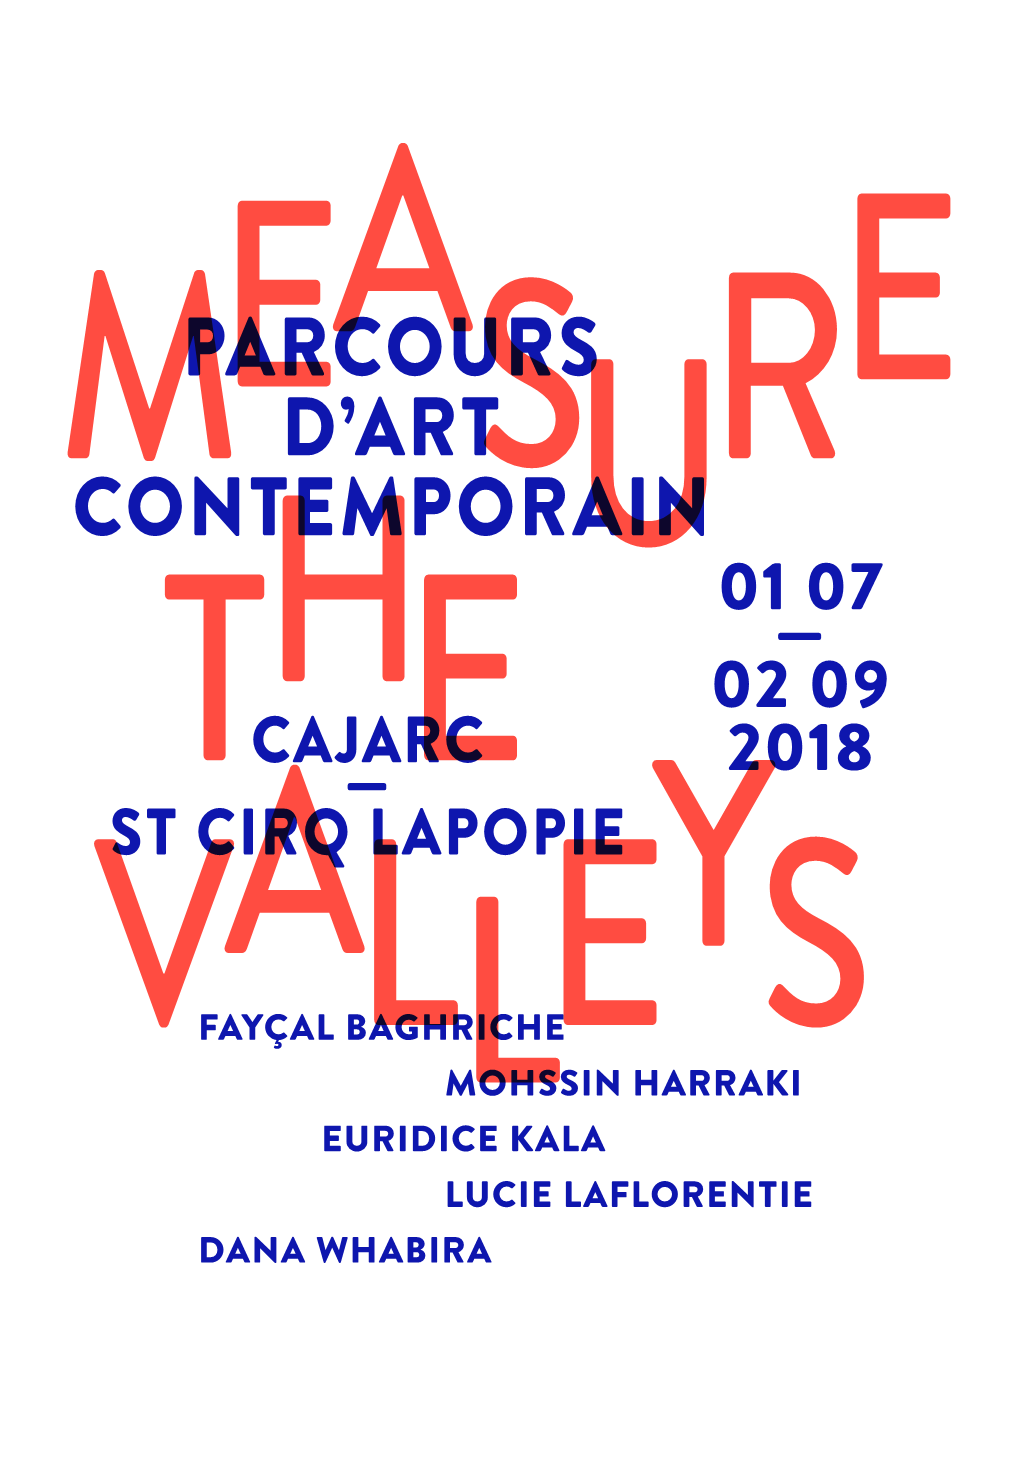 Le Livret Français Du Parcours D'art Contemporain 2018